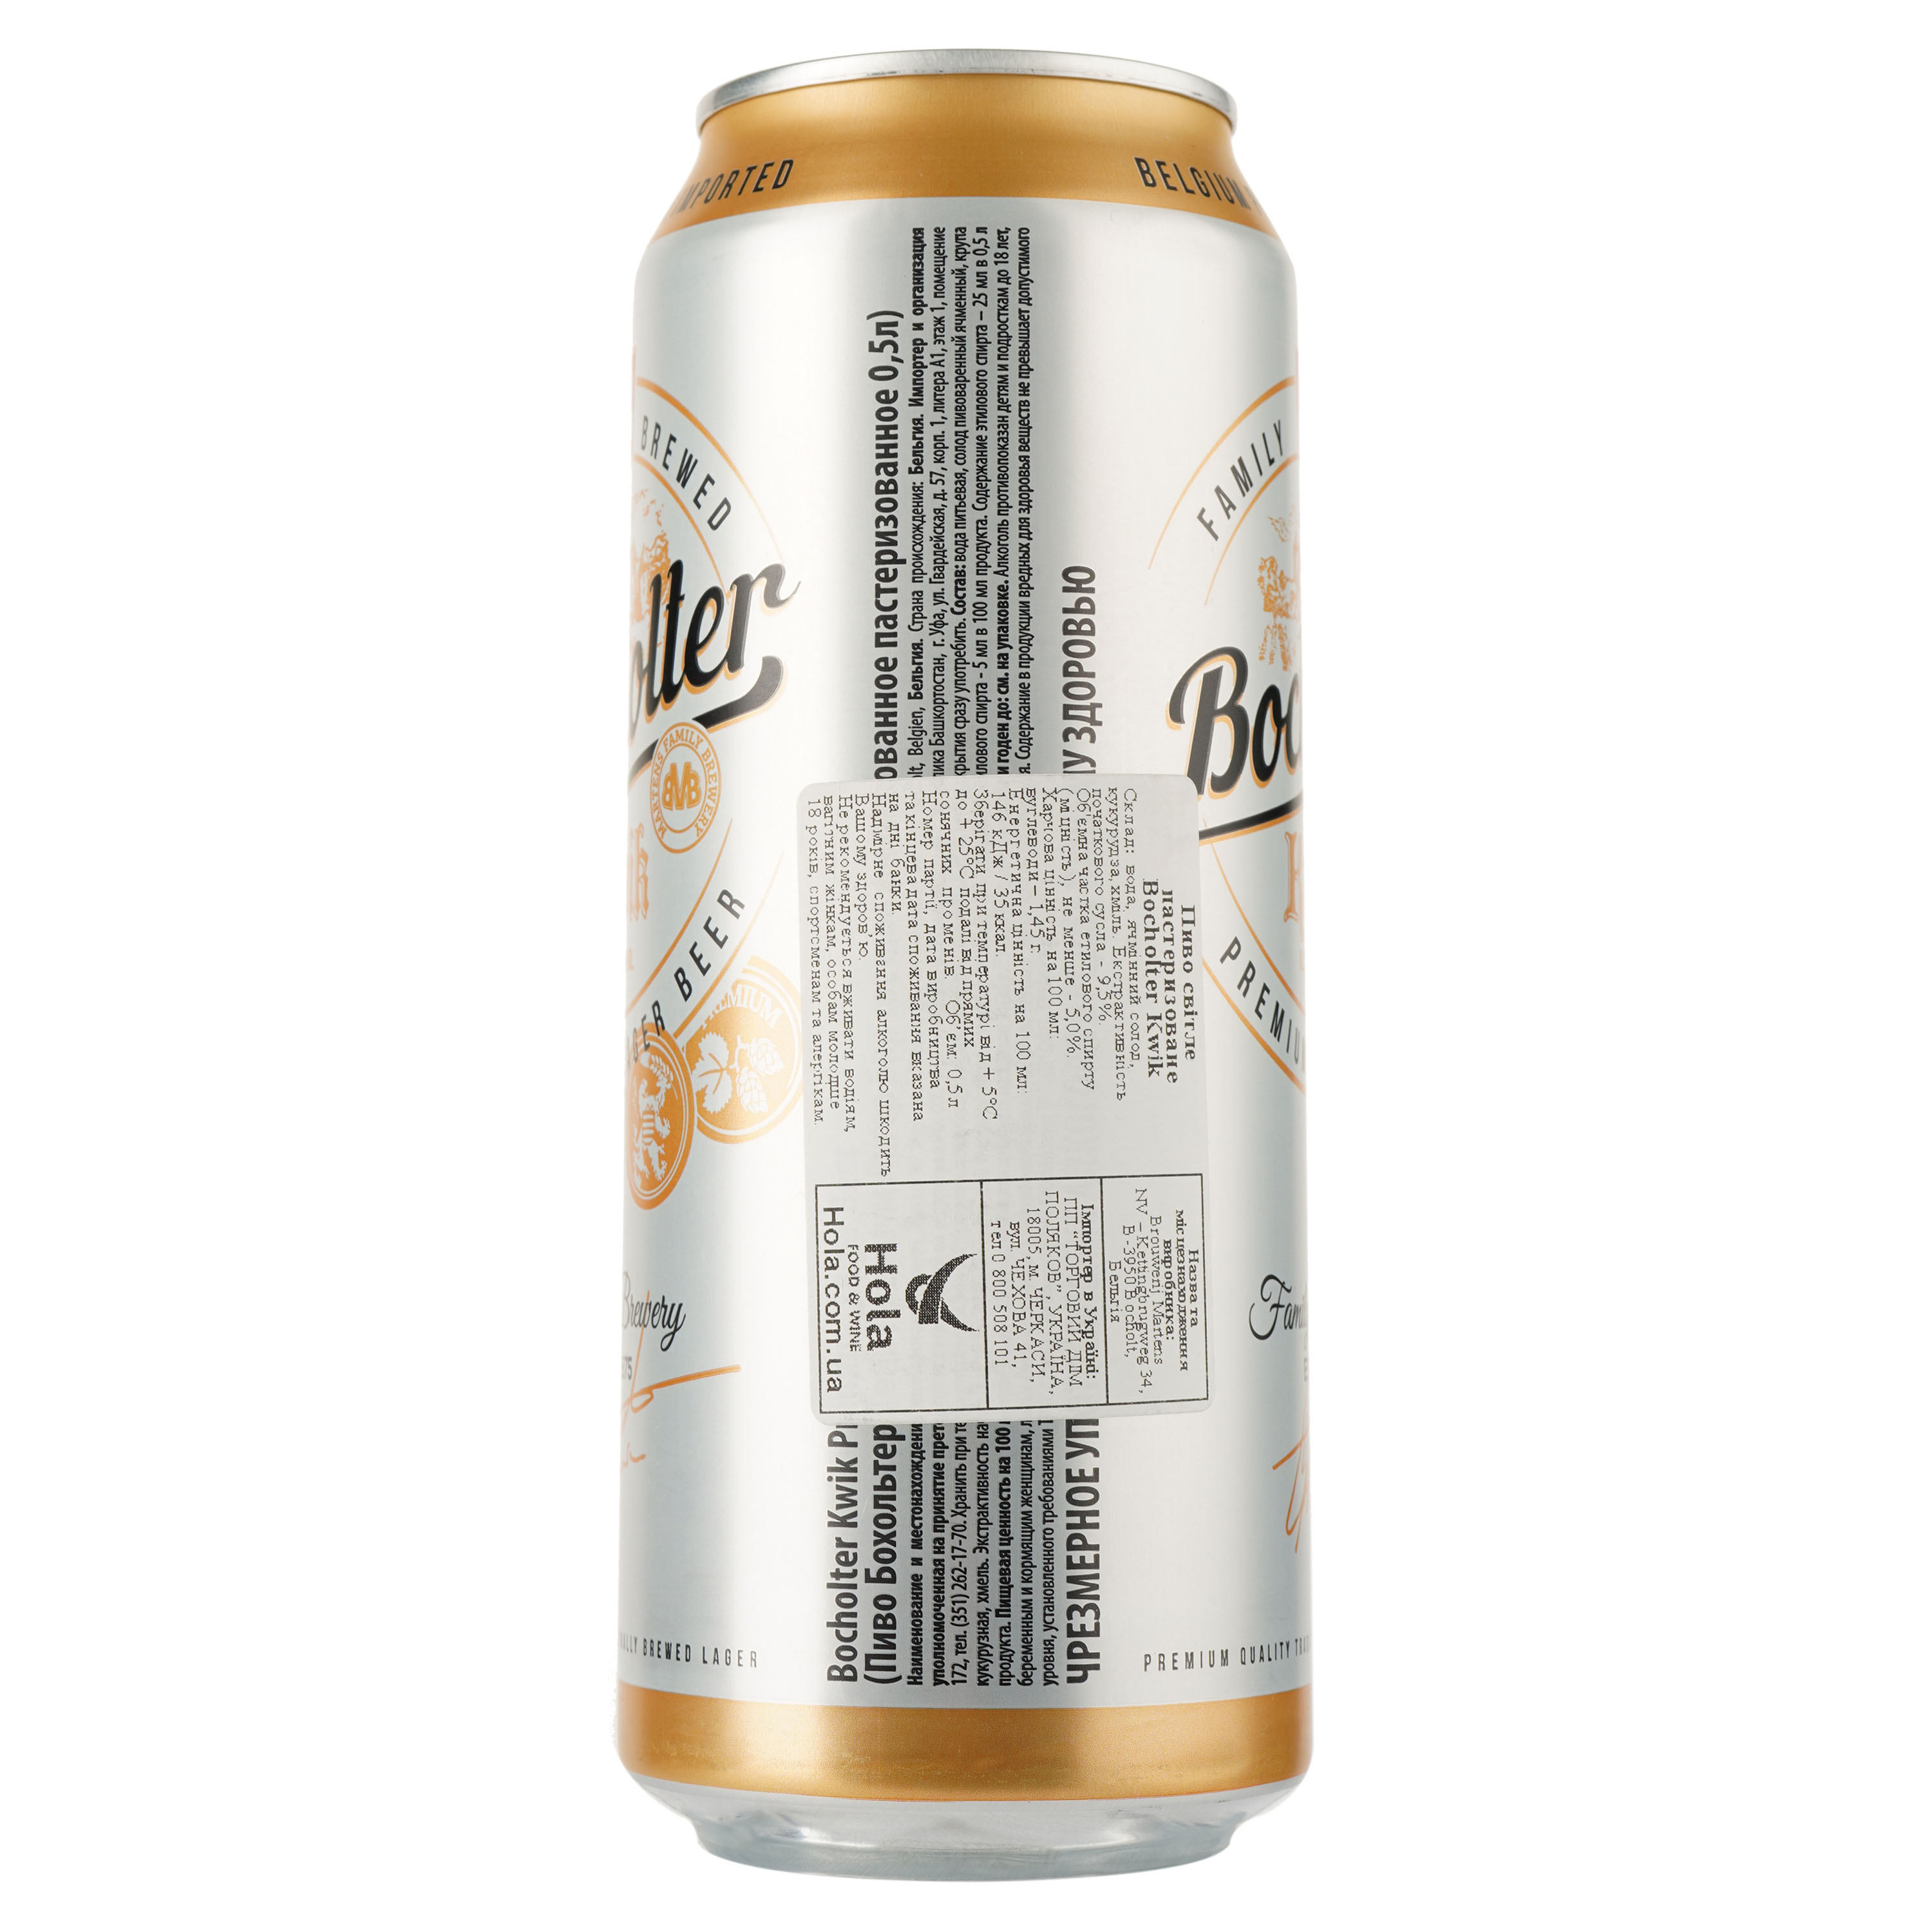 Пиво Bocholter Kwik, светлое, фильтрованное, 5%, ж/б, 0,5 л - фото 2